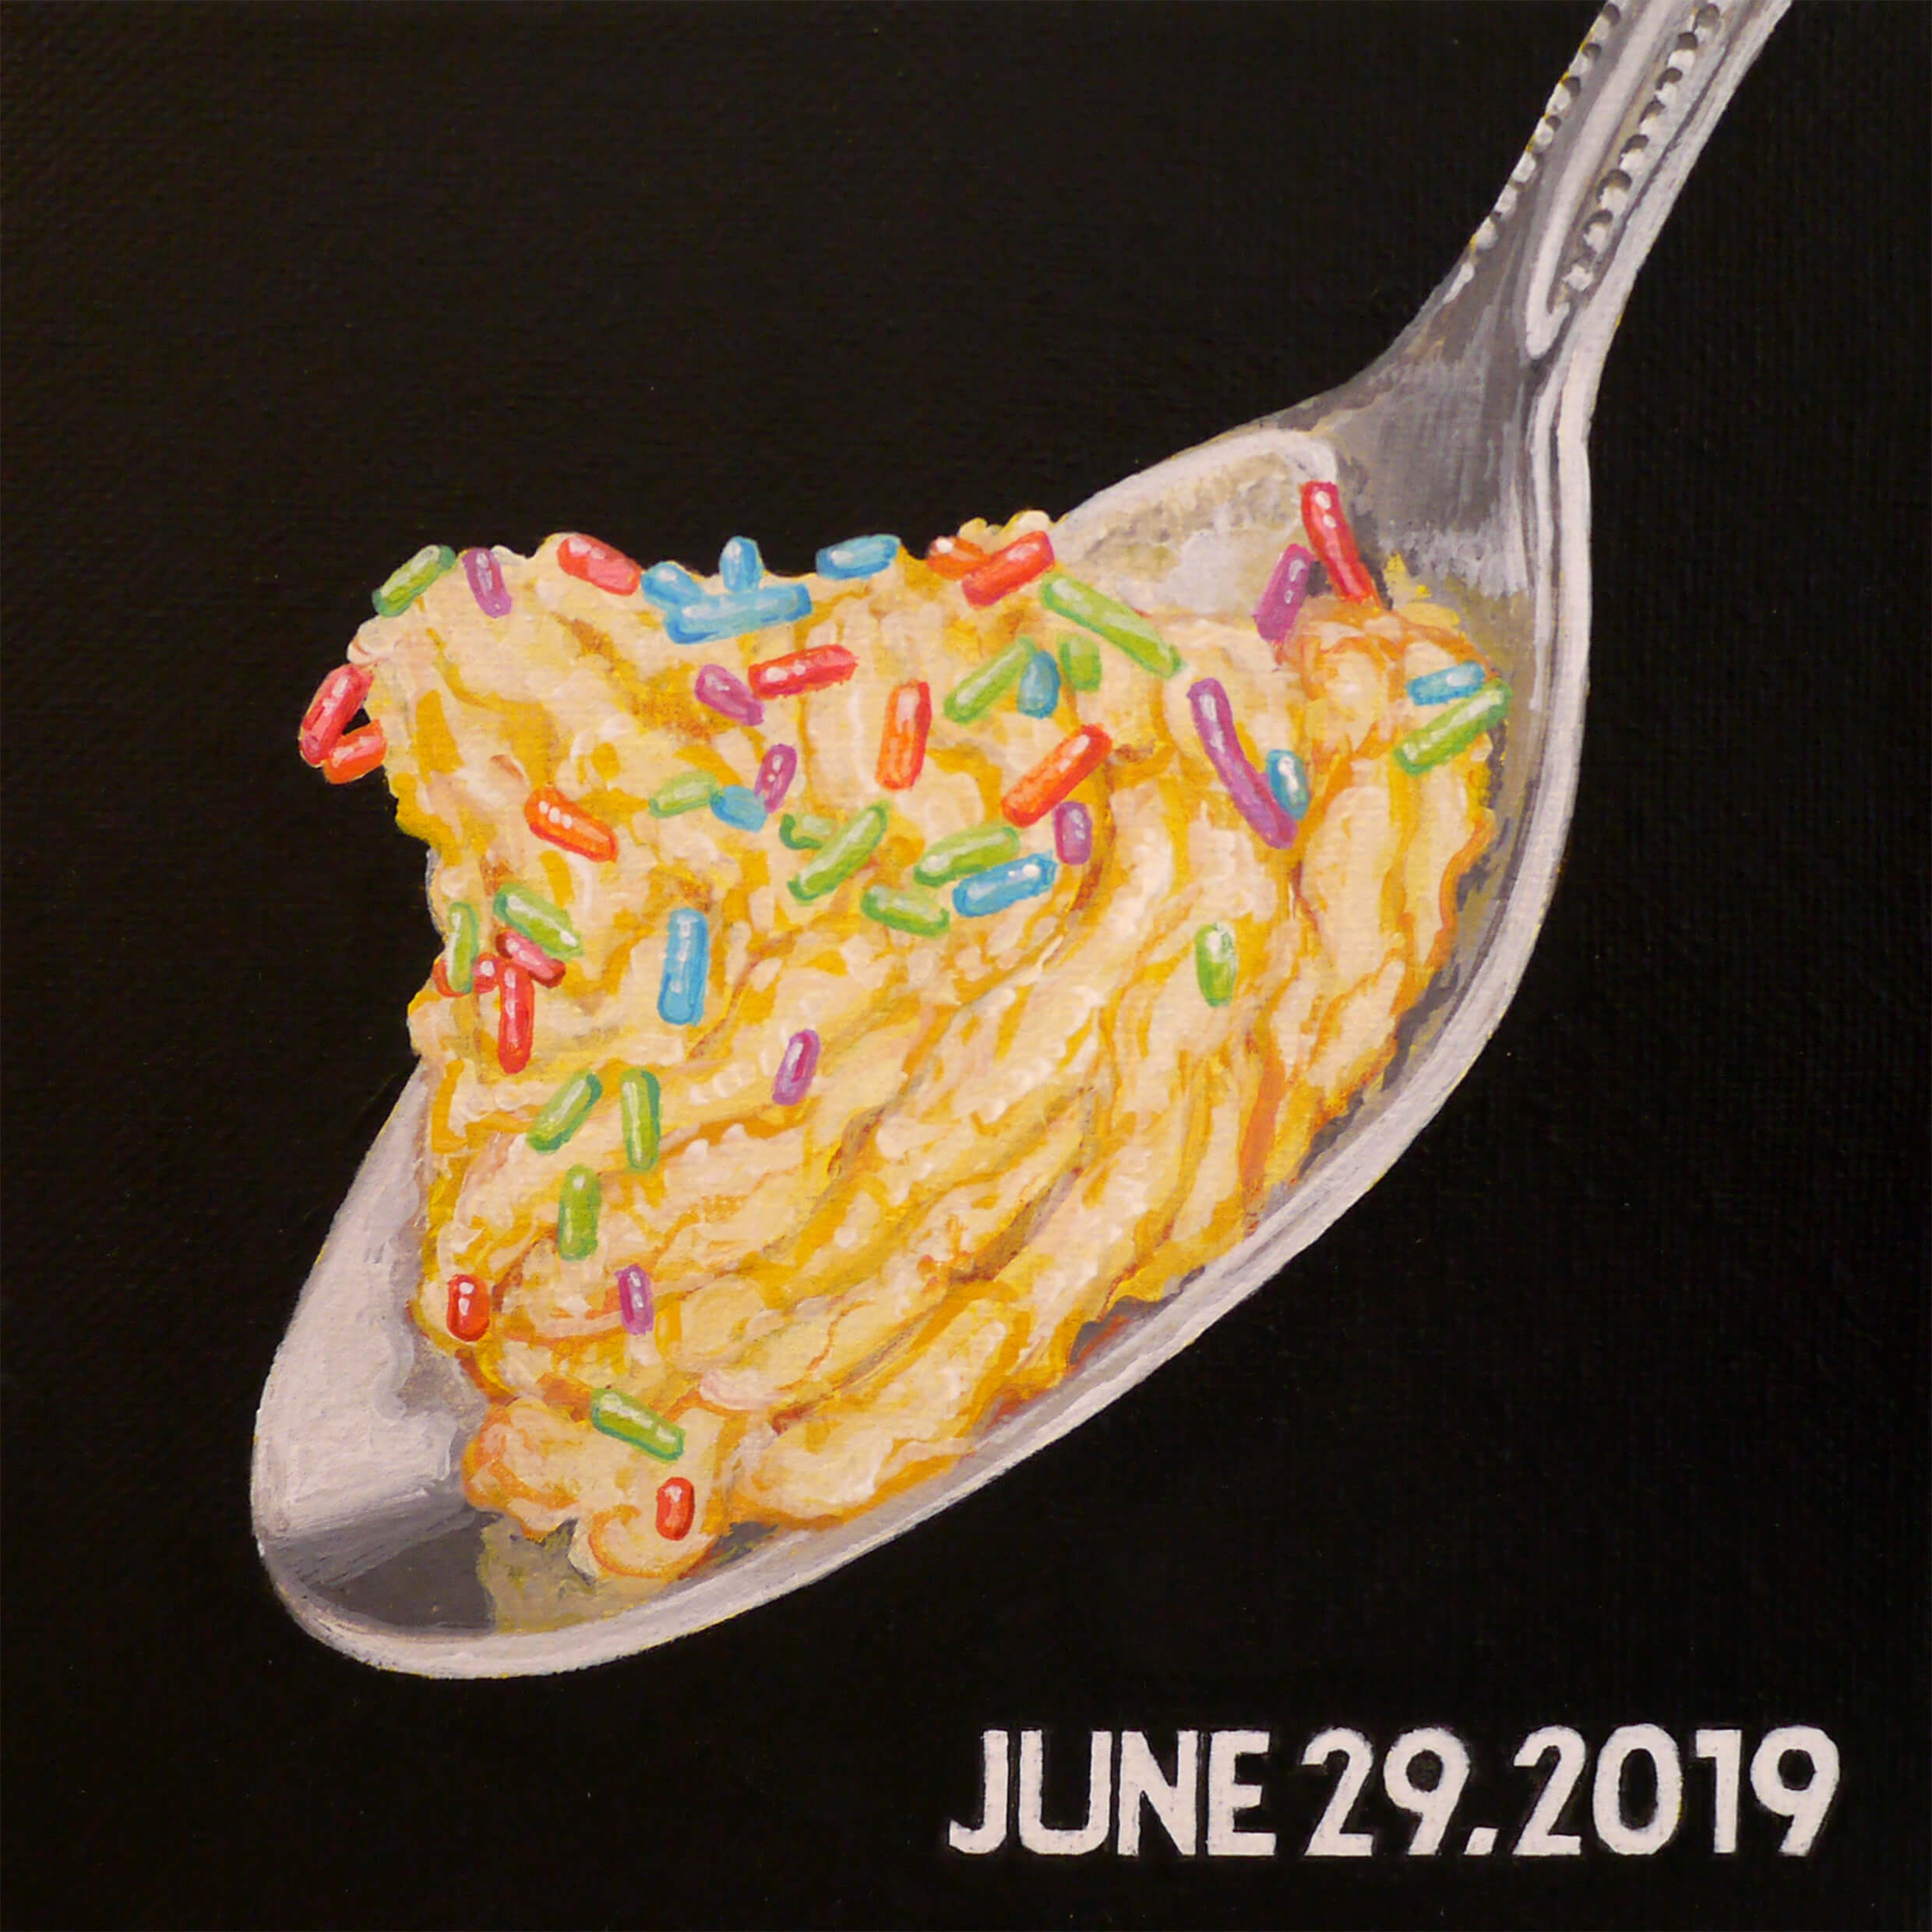 Today's meal-June 29, 2019 (Bagel)